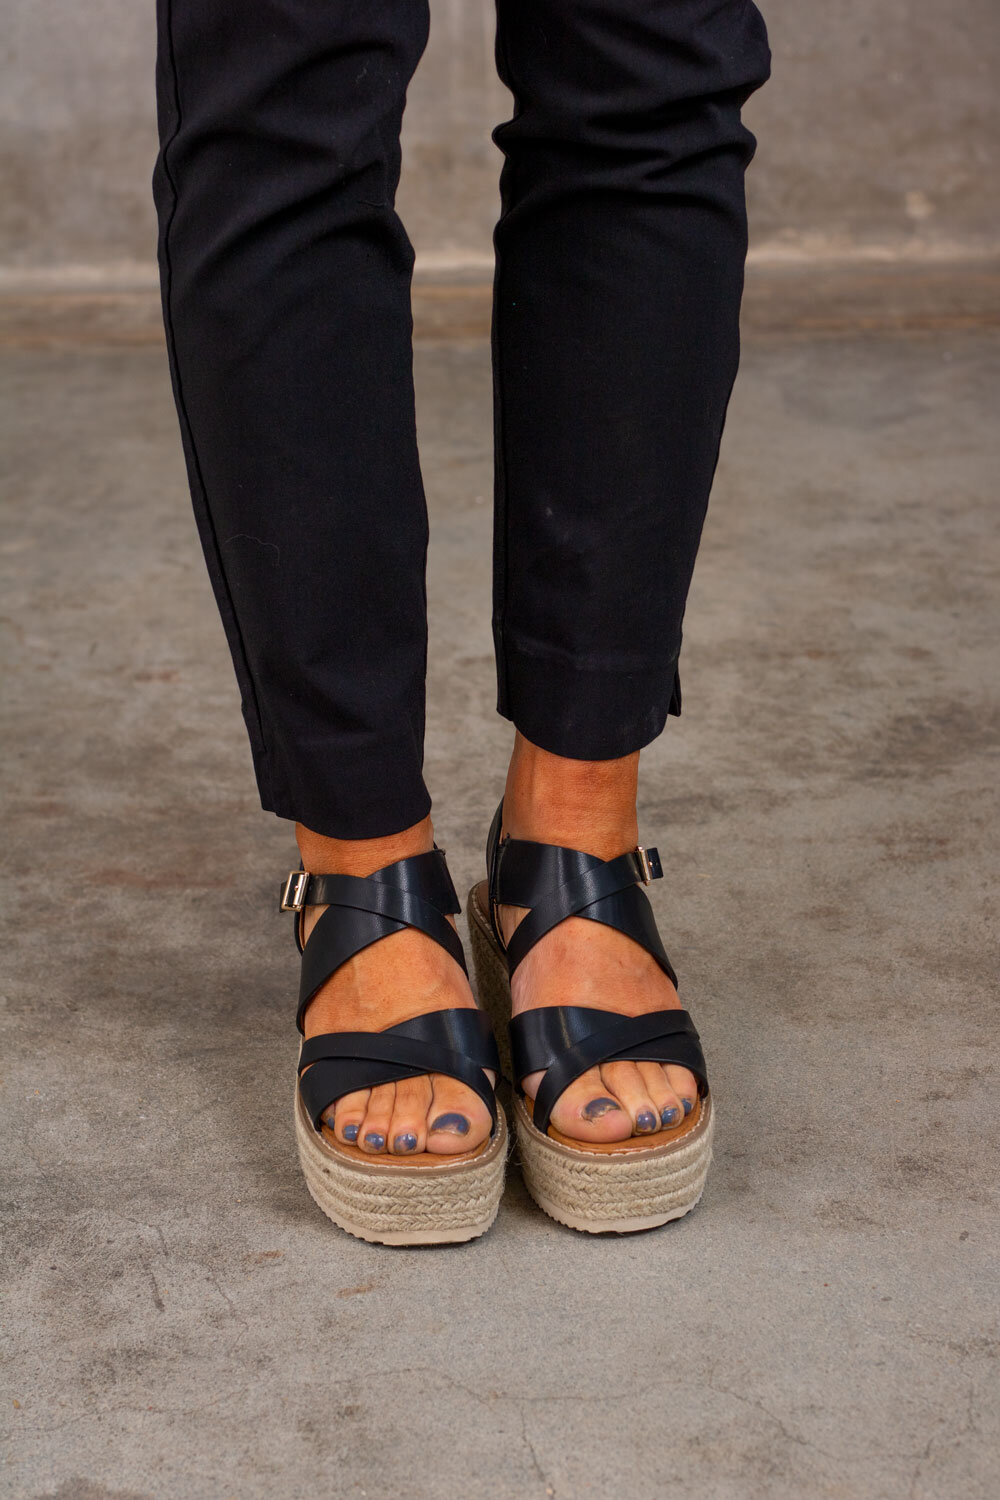 Sandals with Wedge Heel - Black